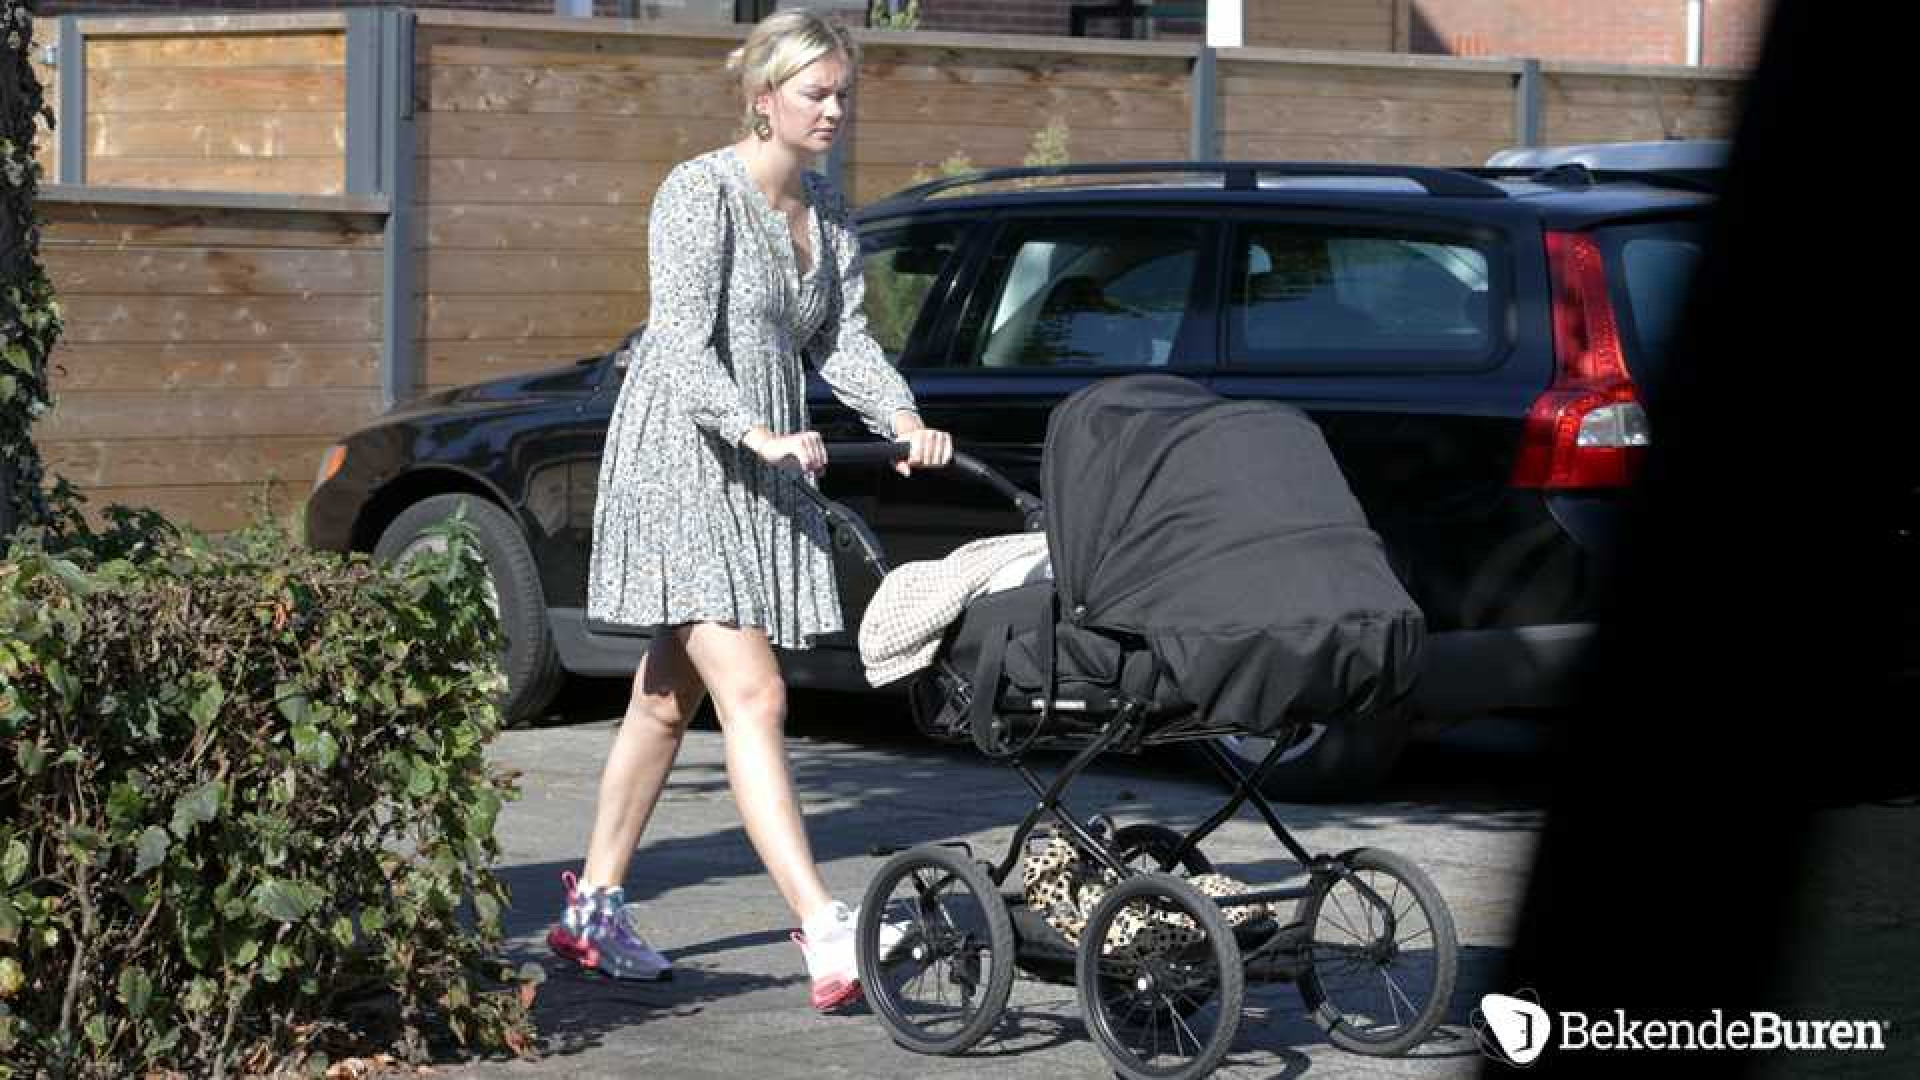 Eerste beelden Maxime Meiland wandelend met baby Vive en dochtertje Claire. Zie foto's 6